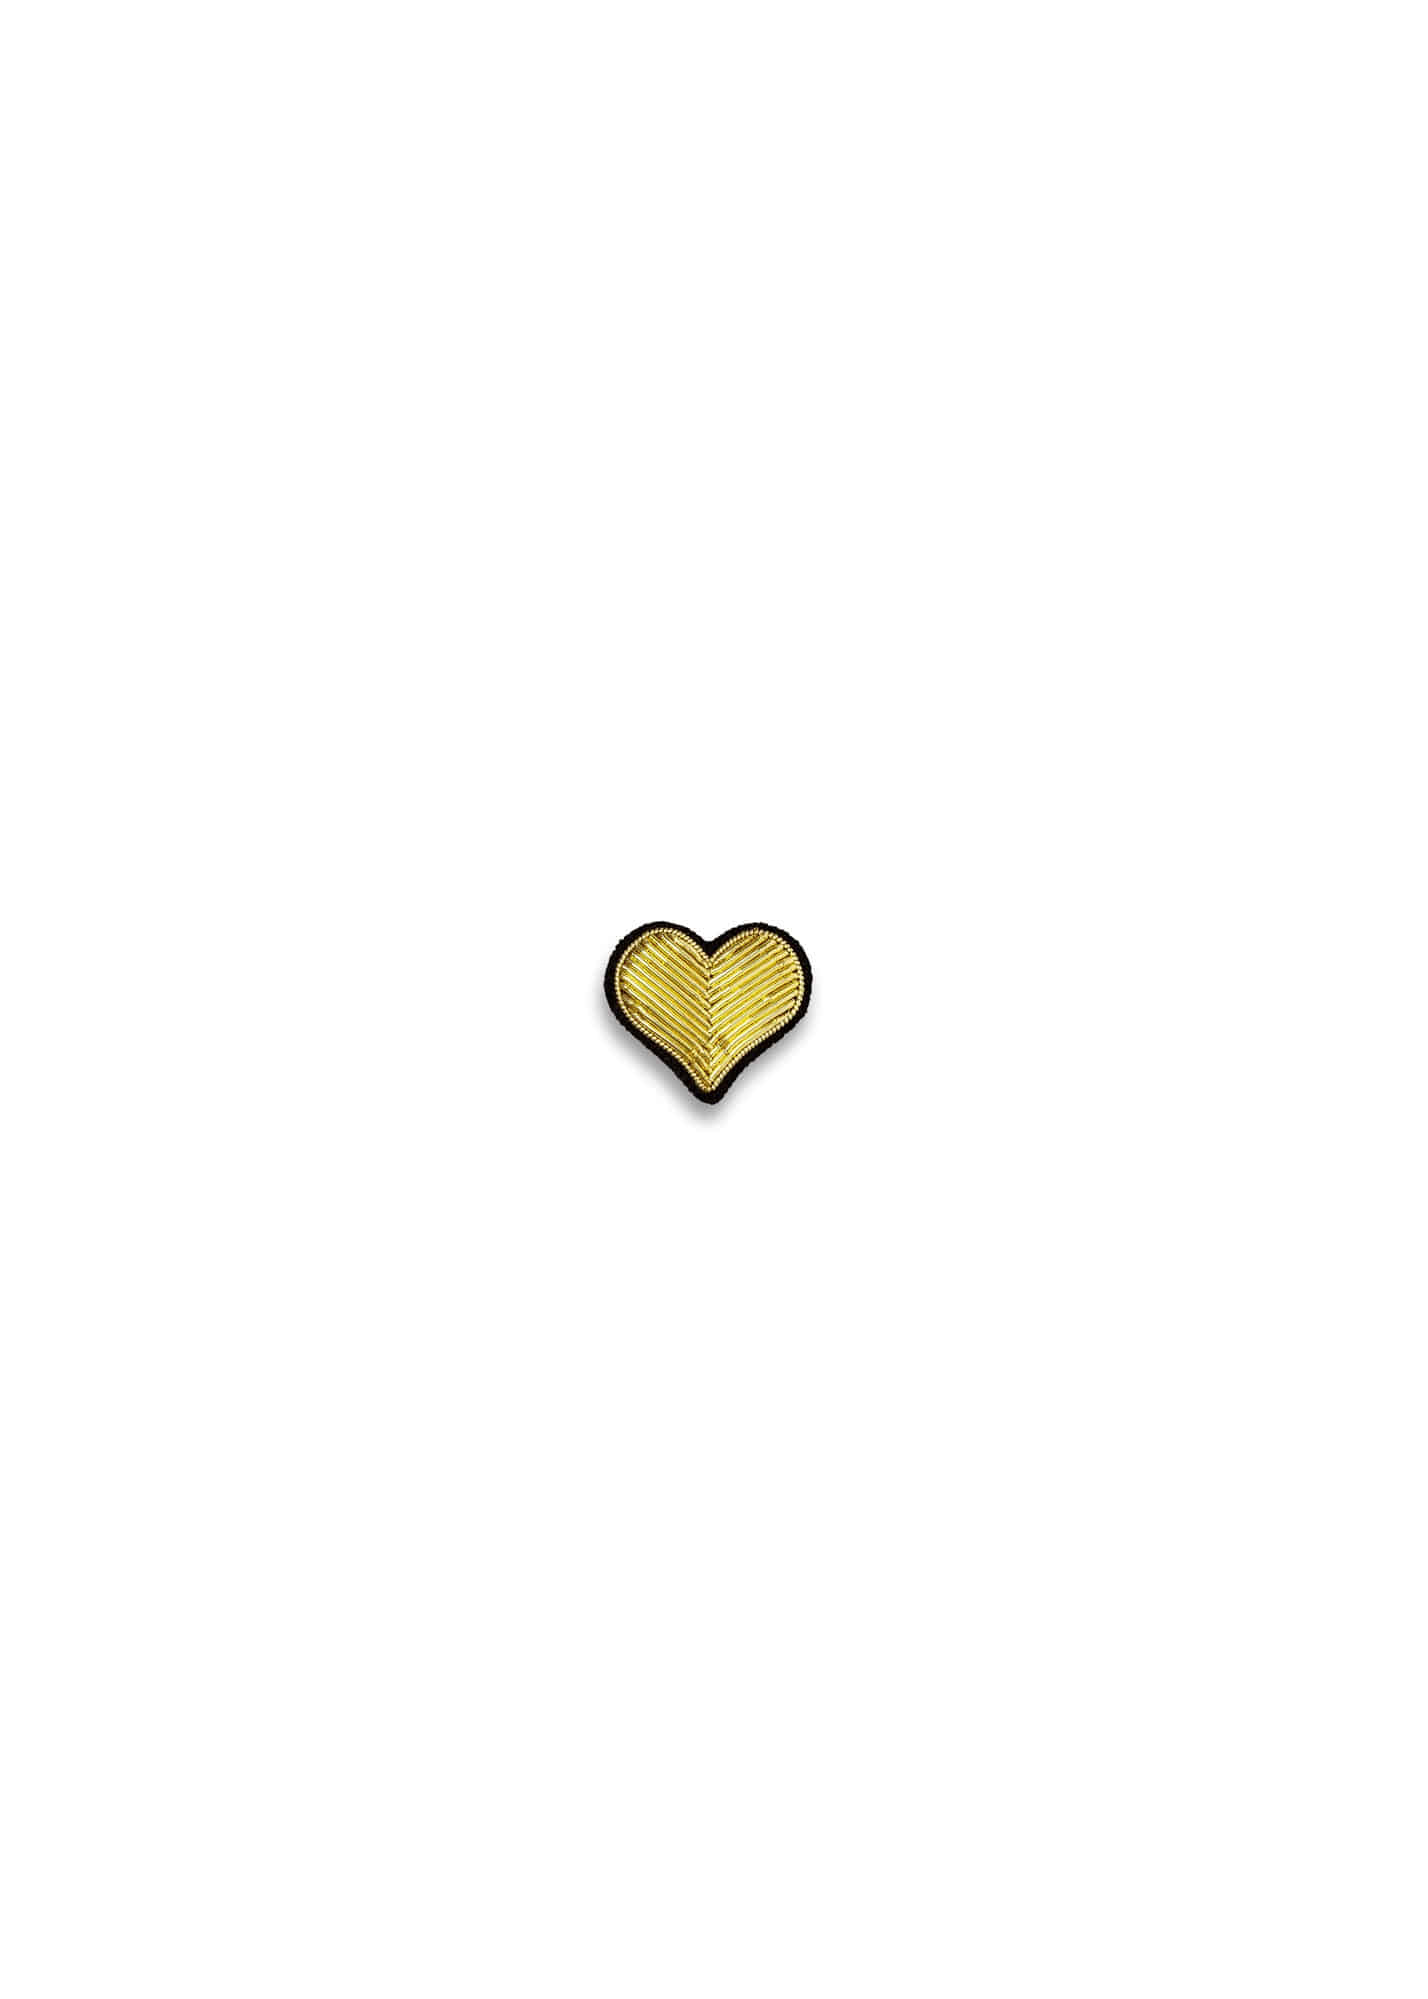 BROOCH - GOLD HEART